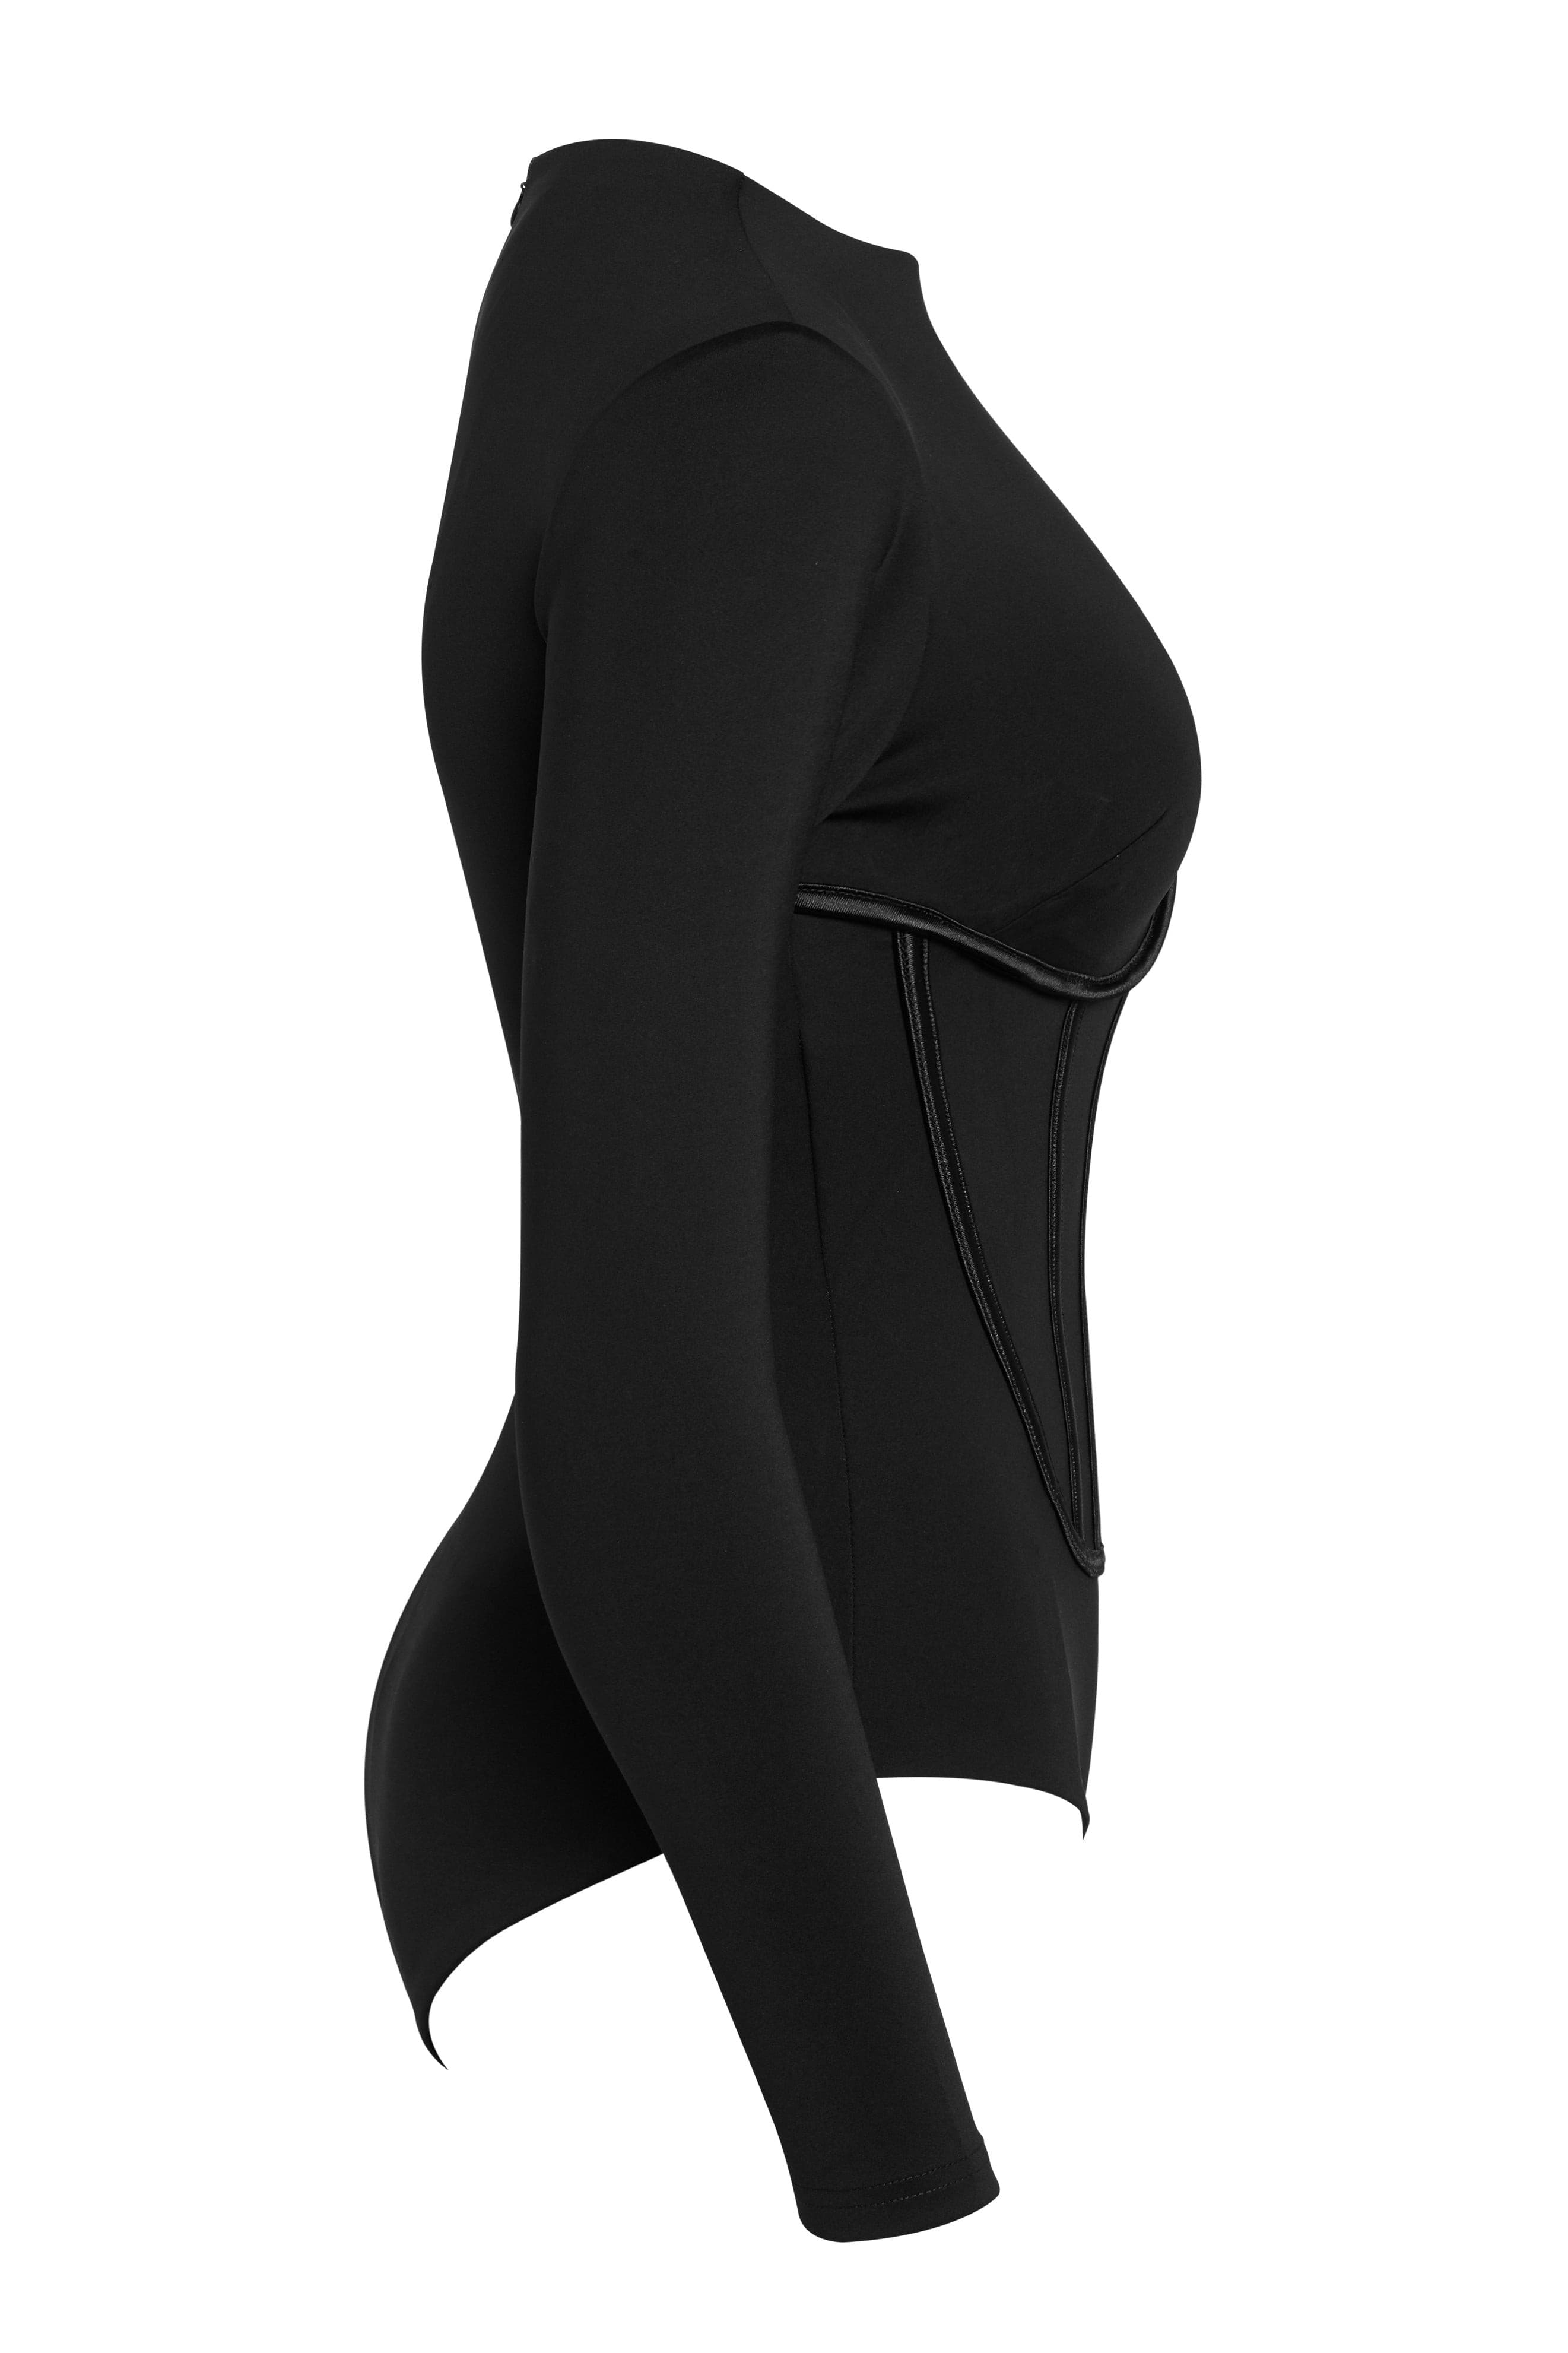 leau black lennox bustier corset bodysuit